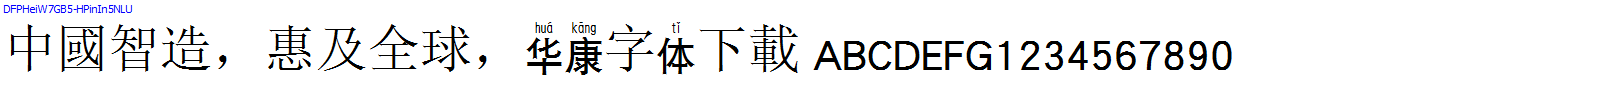 華康字體DFPHeiW7GB5-HPinIn5NLU.TTF